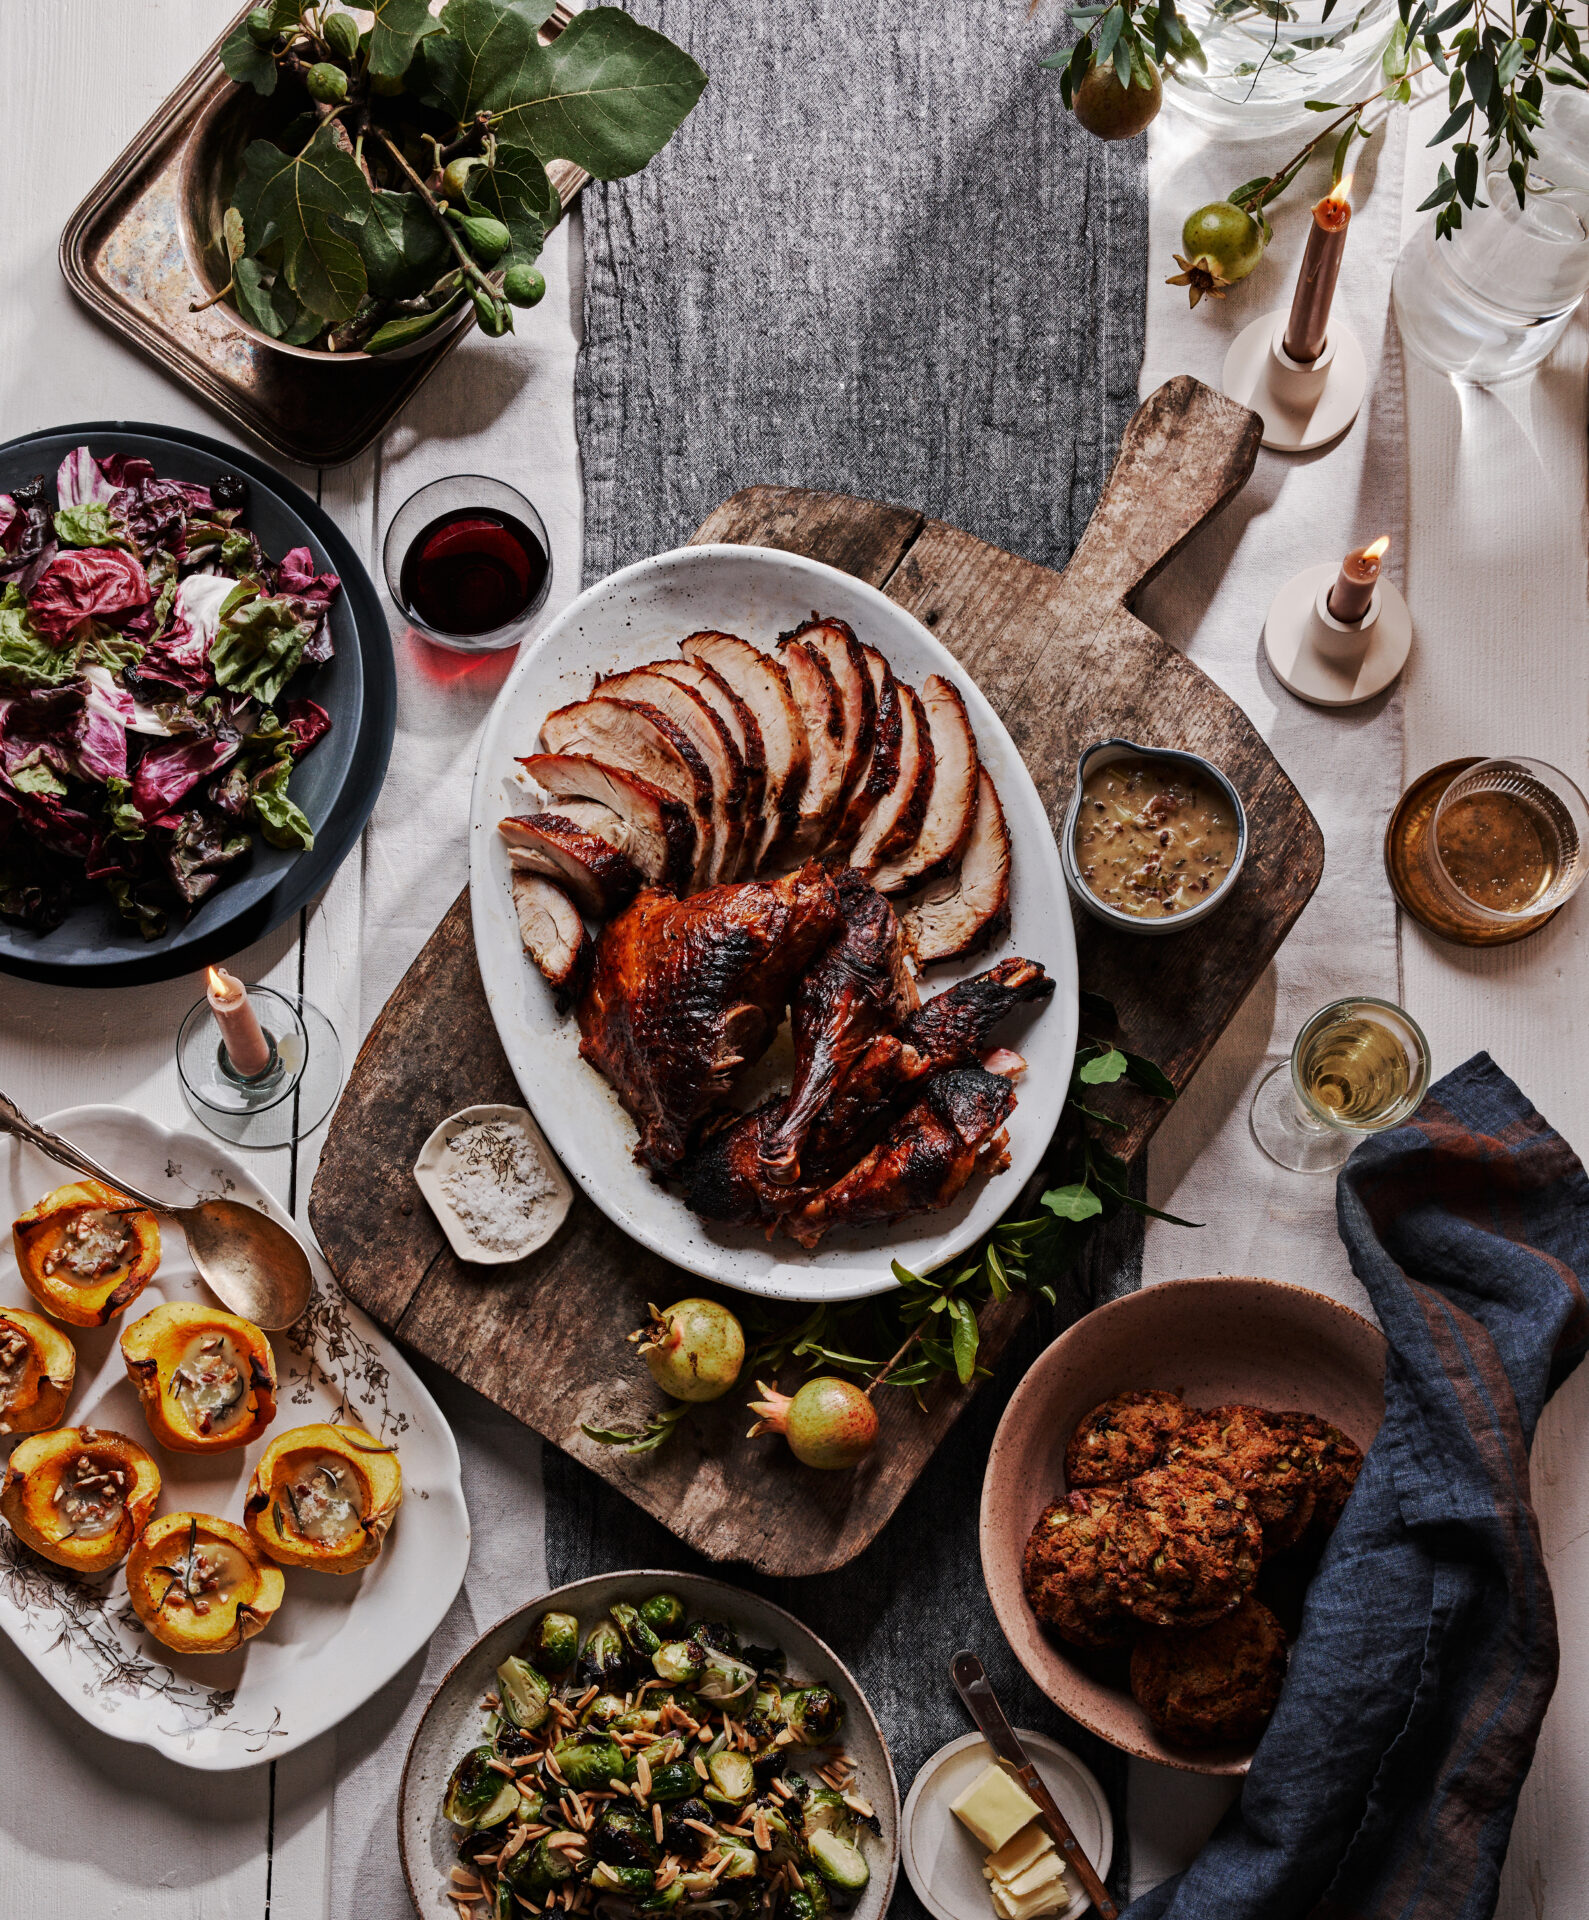 Thanksgiving spread by Steven Satterfield